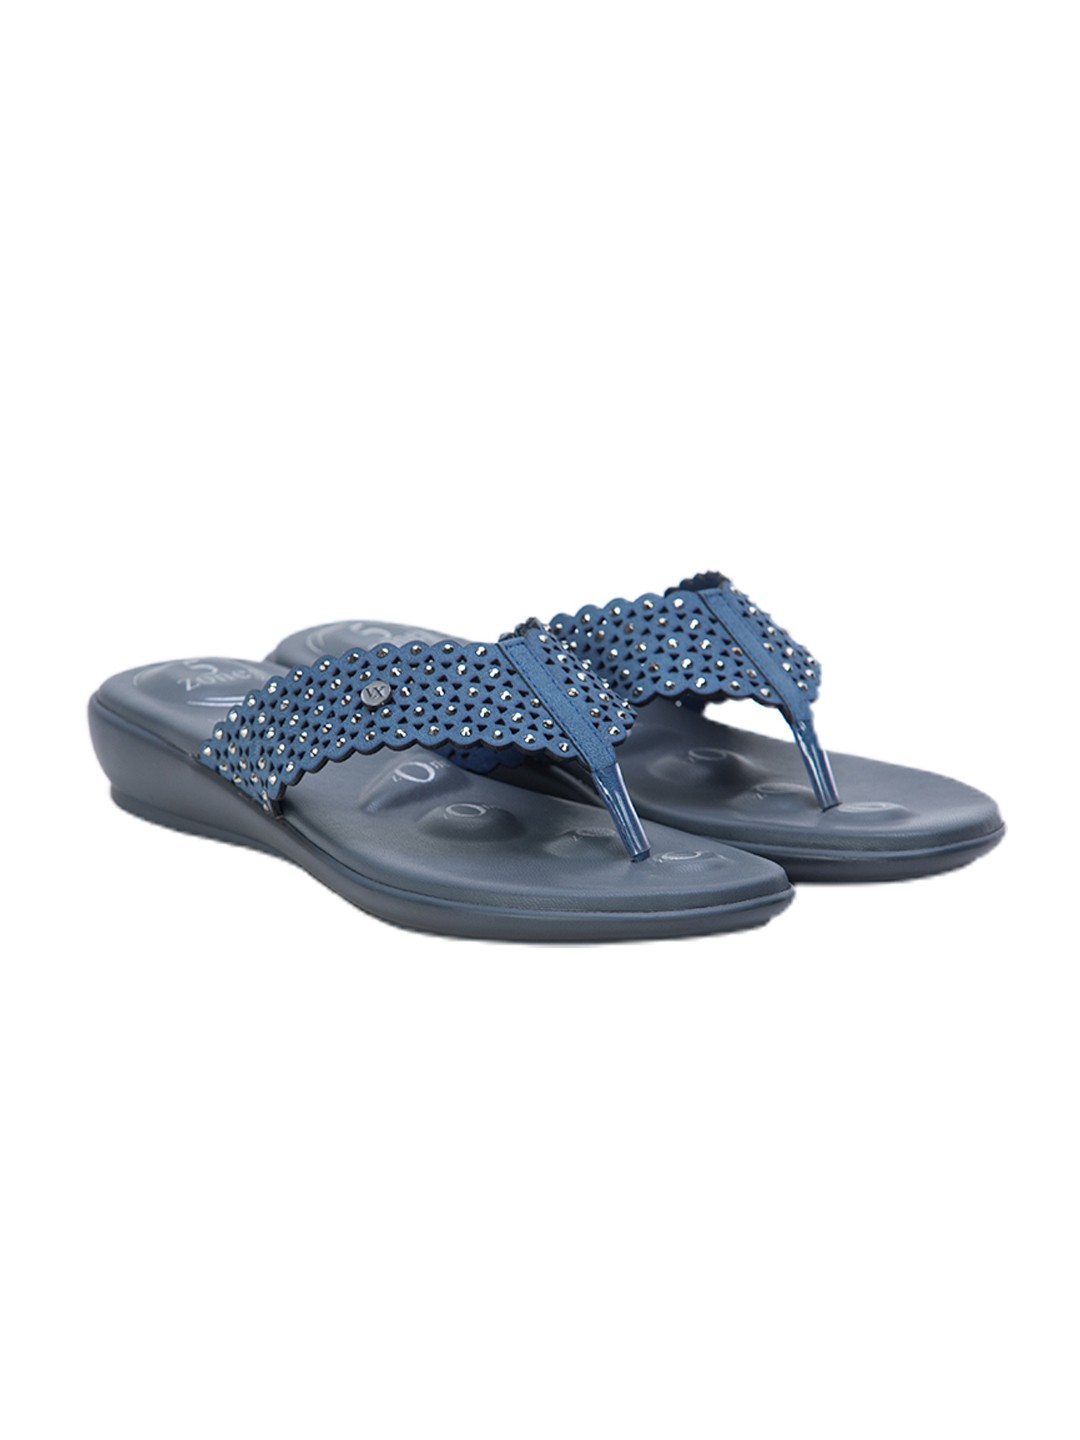 Buy Von Wellx Germany Comfort Gleam Blue Slippers Online in Kanpur